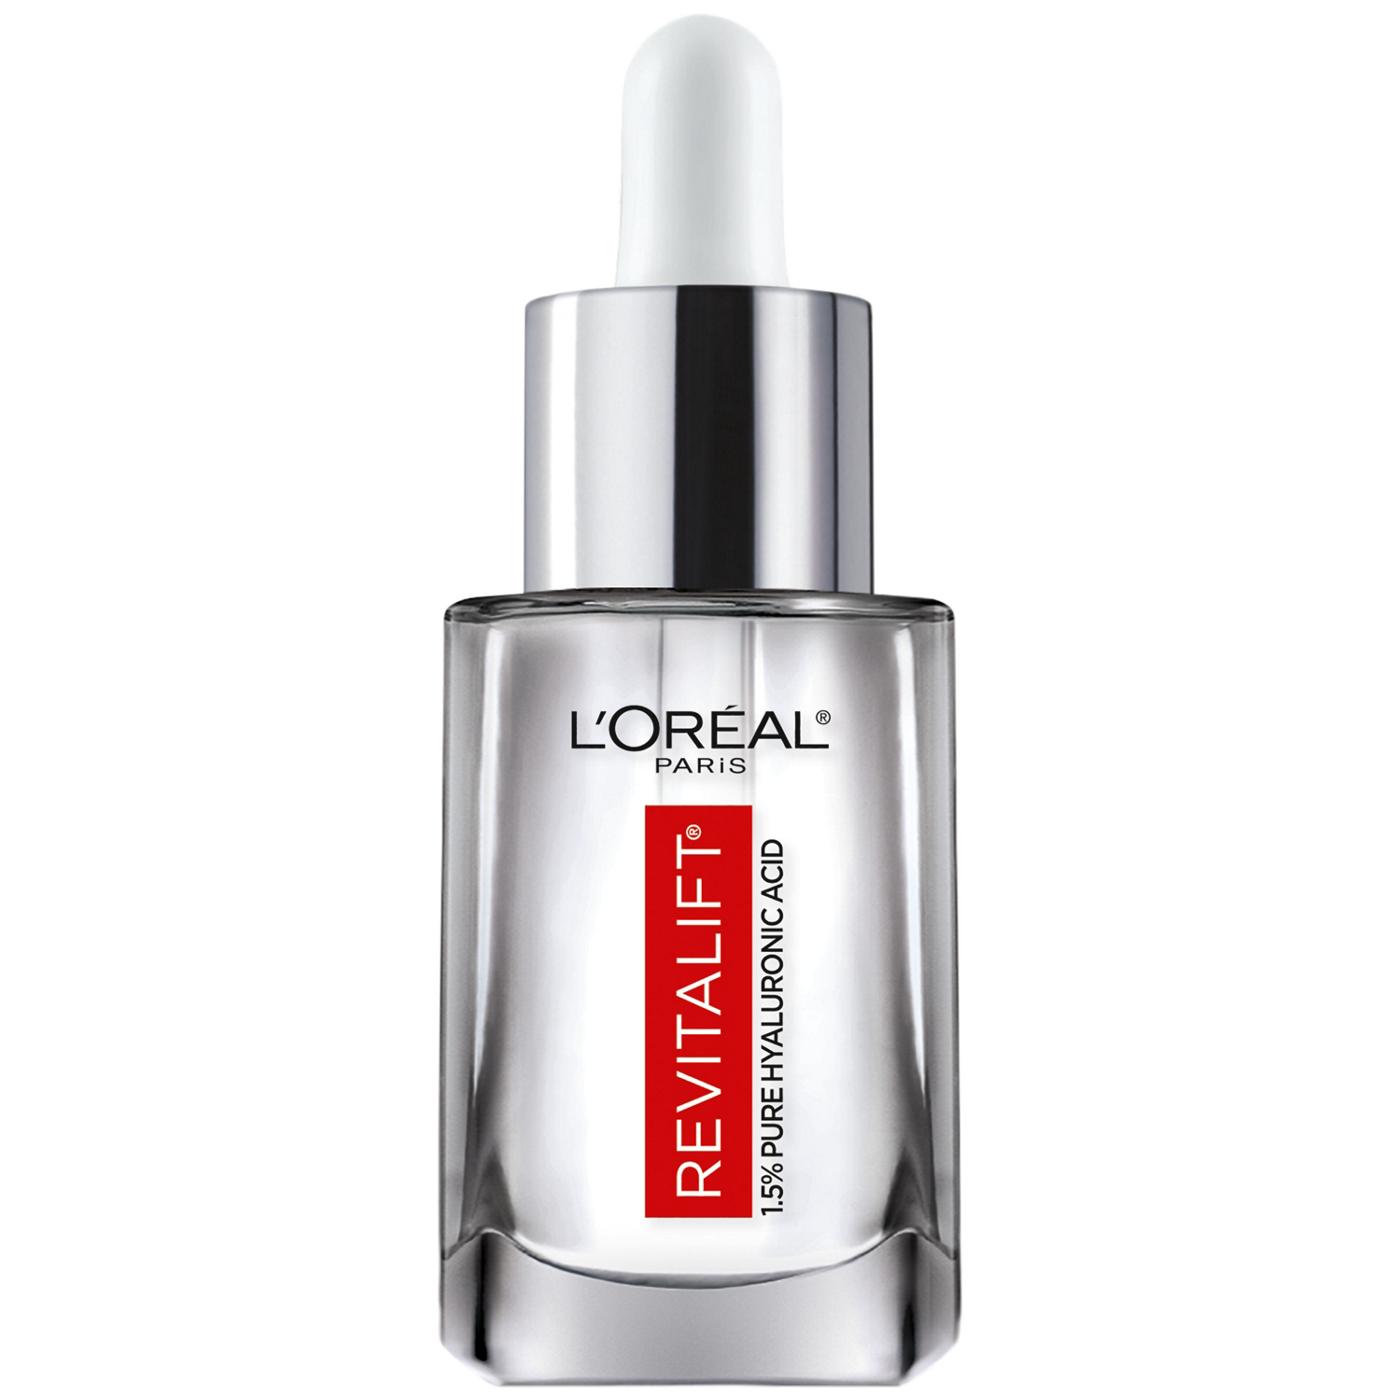 L'Oréal Paris Revitalift Derm Intensives Hyaluronic Acid Face Serum; image 4 of 5